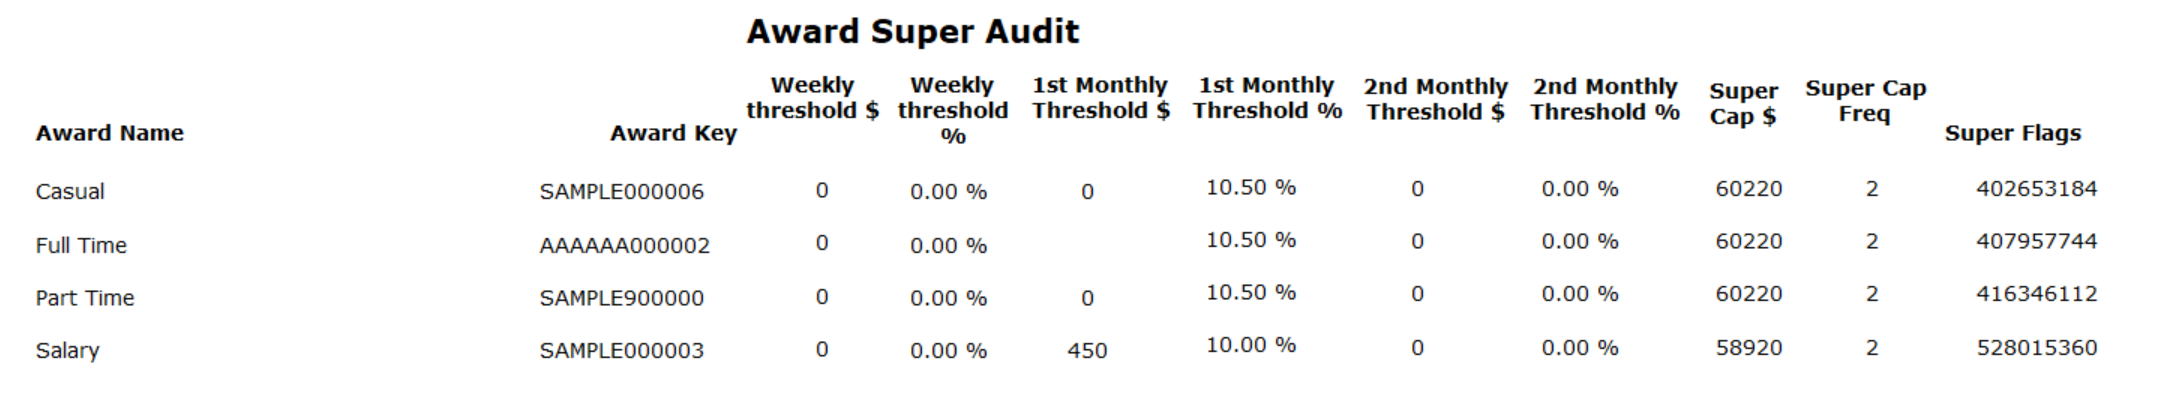 SUper_audit_report_unedited.png